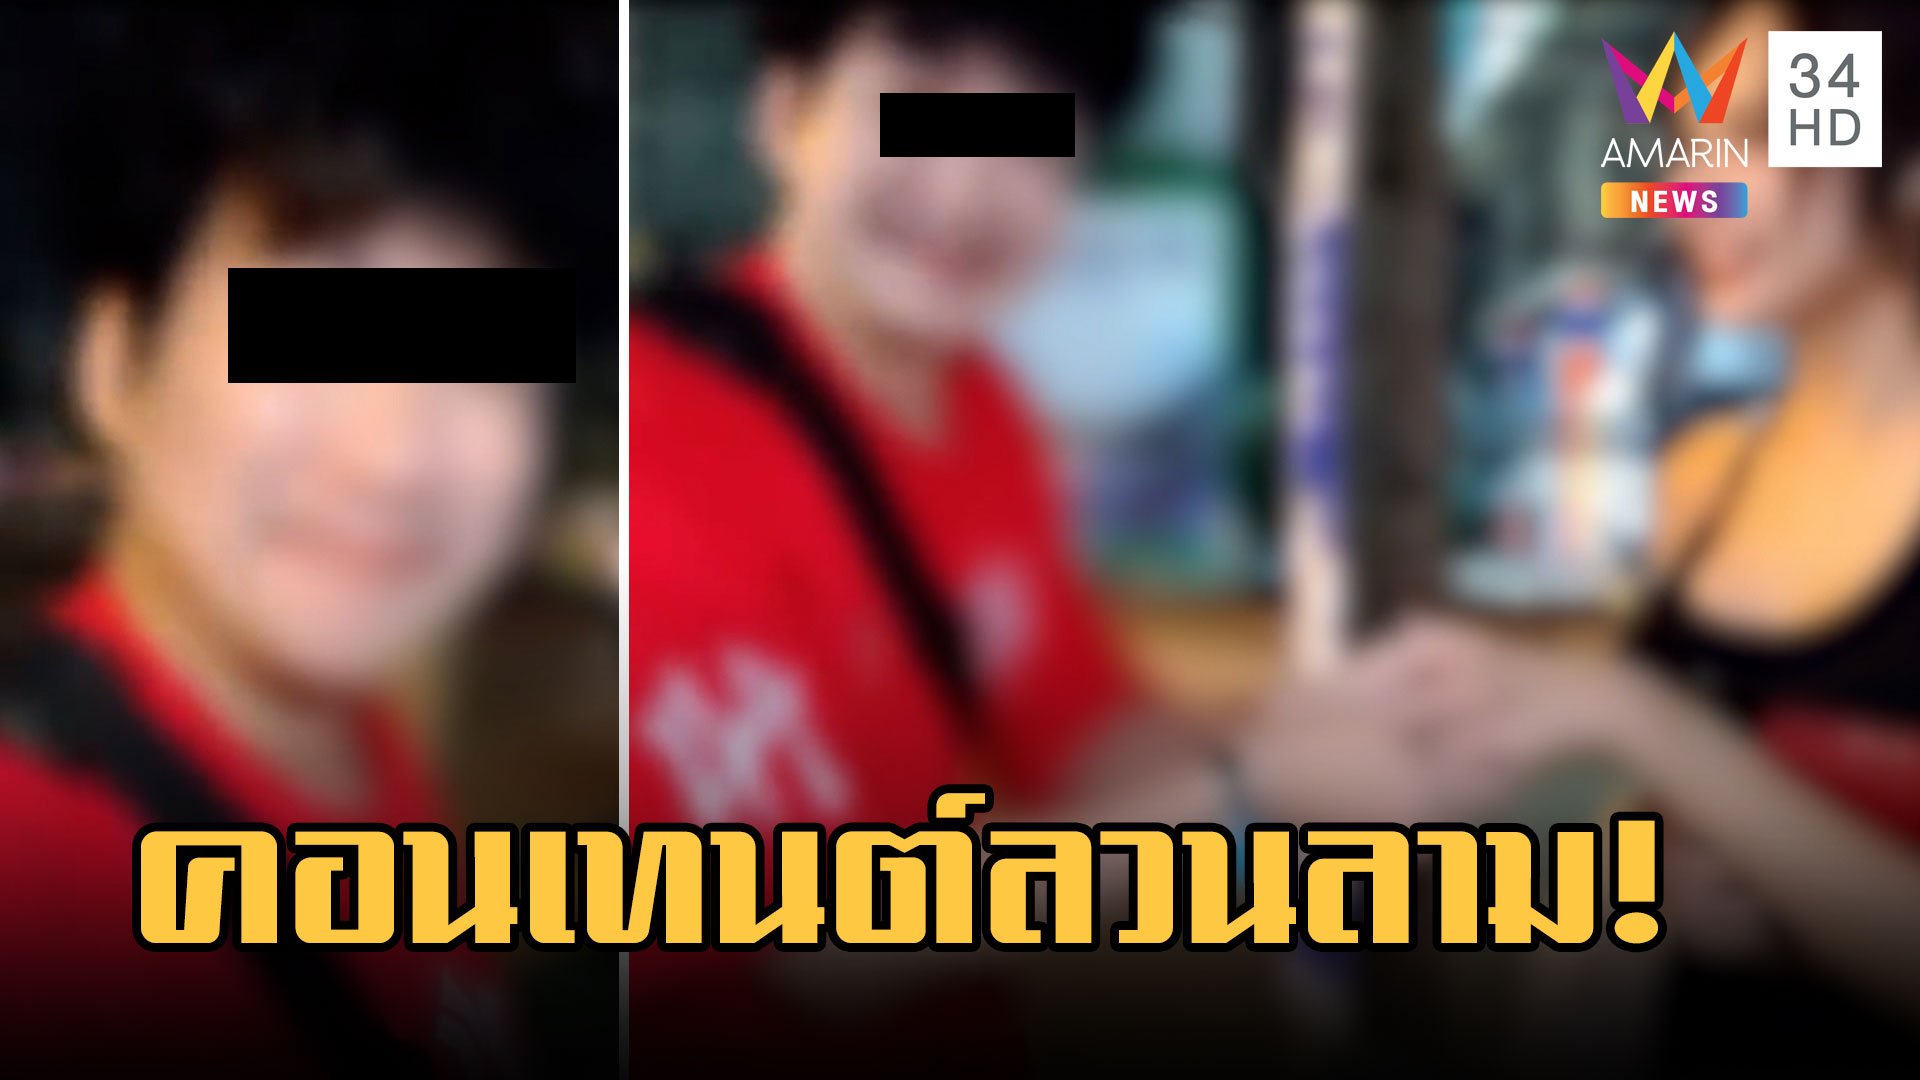 แฉยูทูบเบอร์เกาหลี ทำคอนเทนต์หื่นคุกคามสาวไทยแถมชวนไปดื่มต่อ | ข่าวอรุณอมรินทร์ | 19 มี.ค. 66 | AMARIN TVHD34